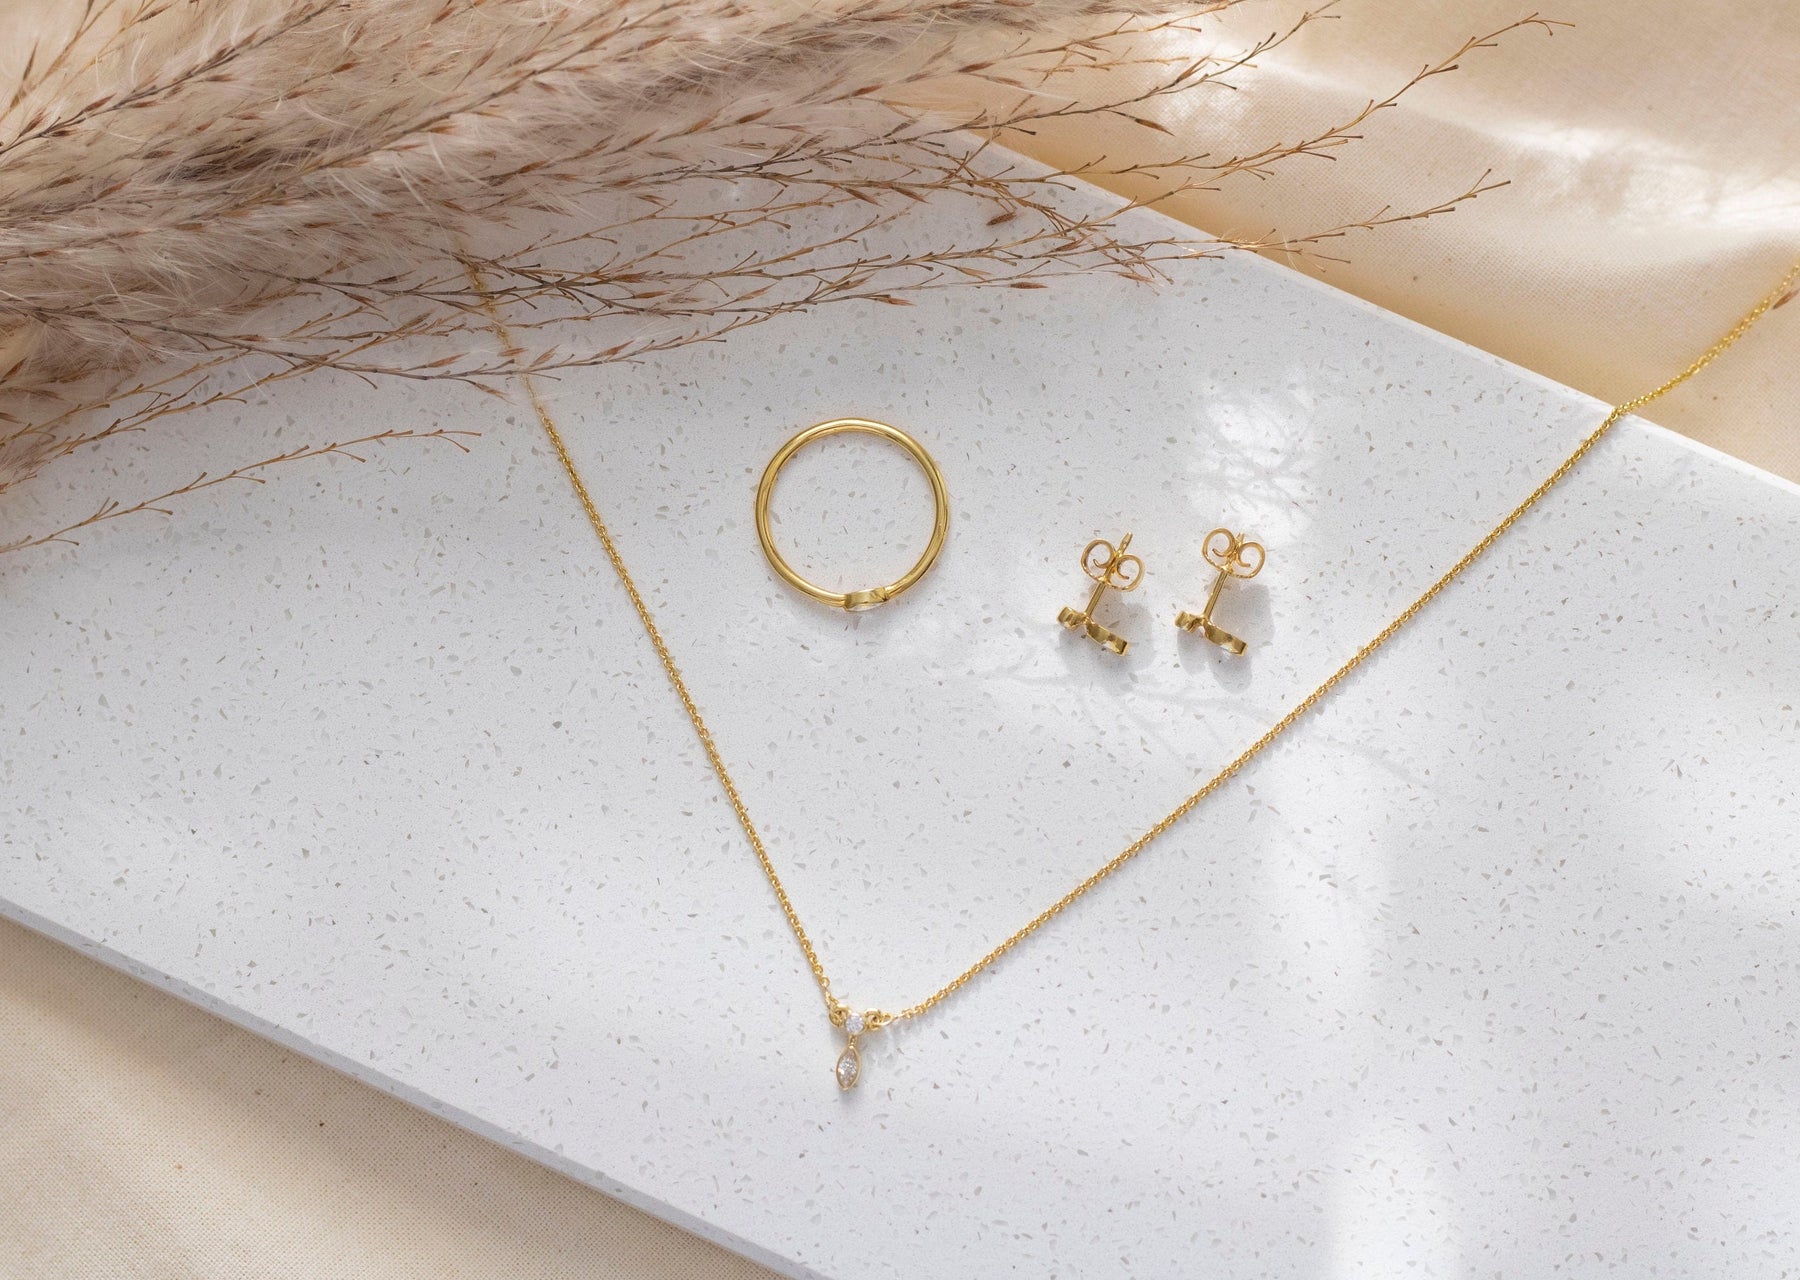 Brillant Ring aus 585 oder 750 Gelbgold, eleganter Diamant Ring, zarter Verlobungsring, Ehering Minimalist, handgefertigt